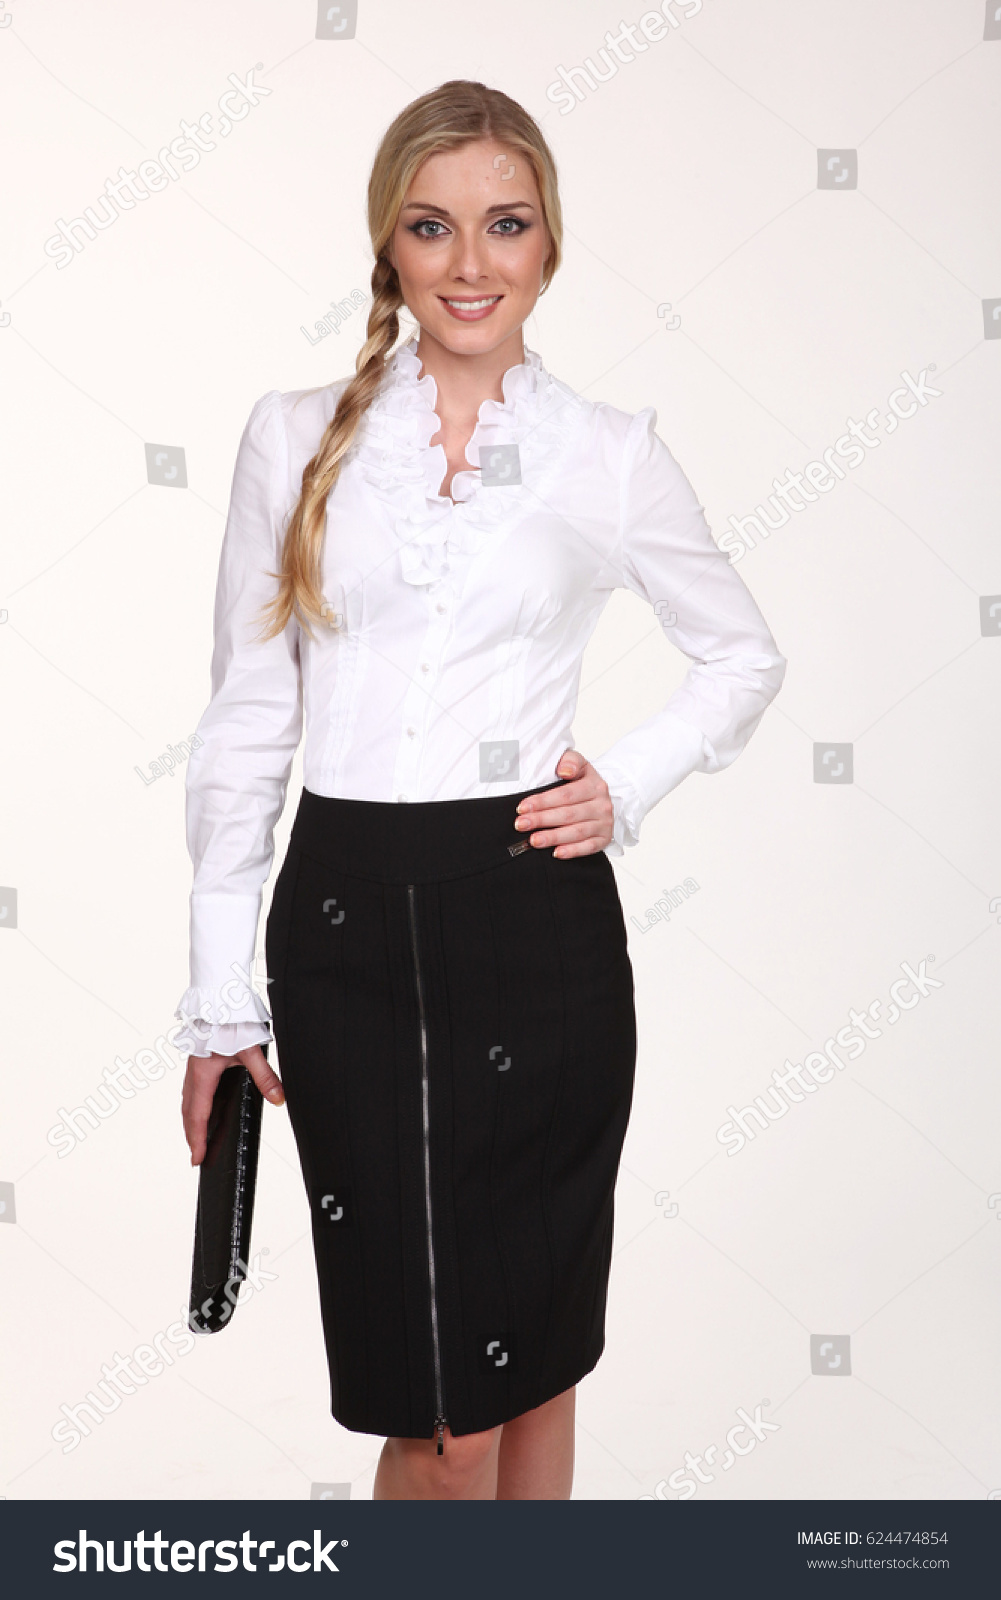 white top black skirt